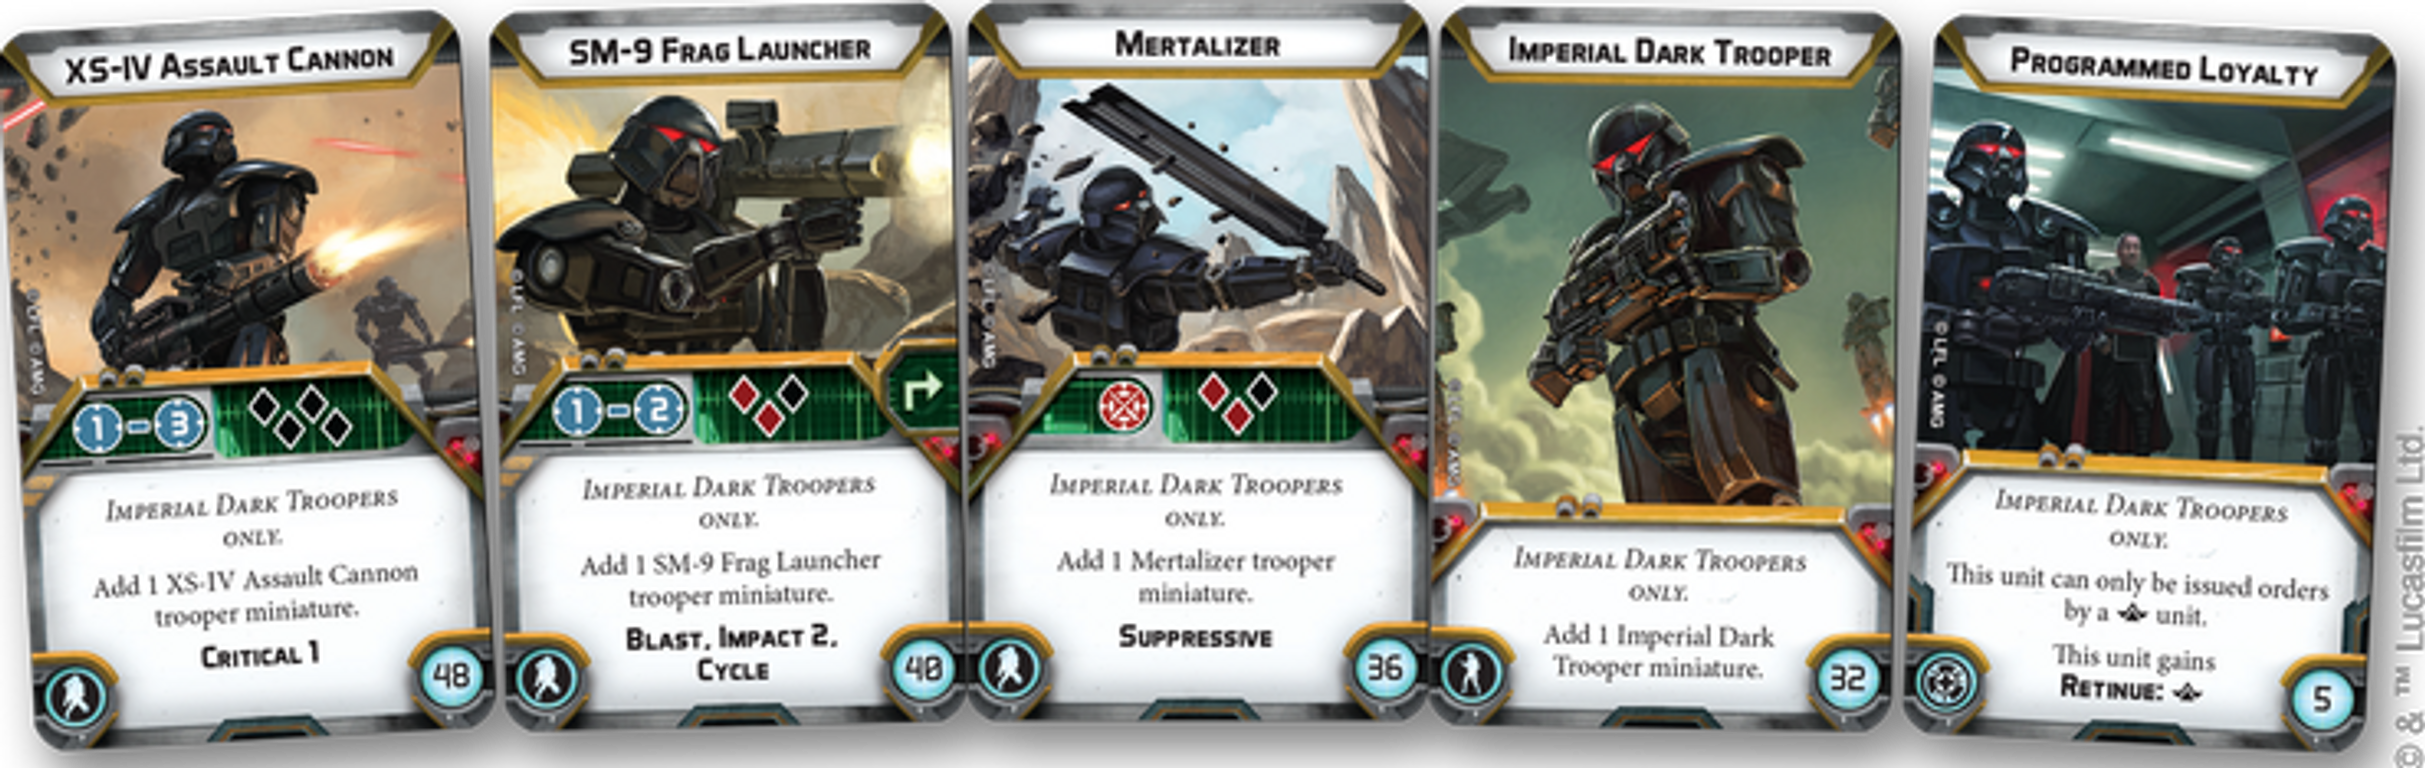 Star Wars: Legion – Dark Troopers Unit Expansion karten